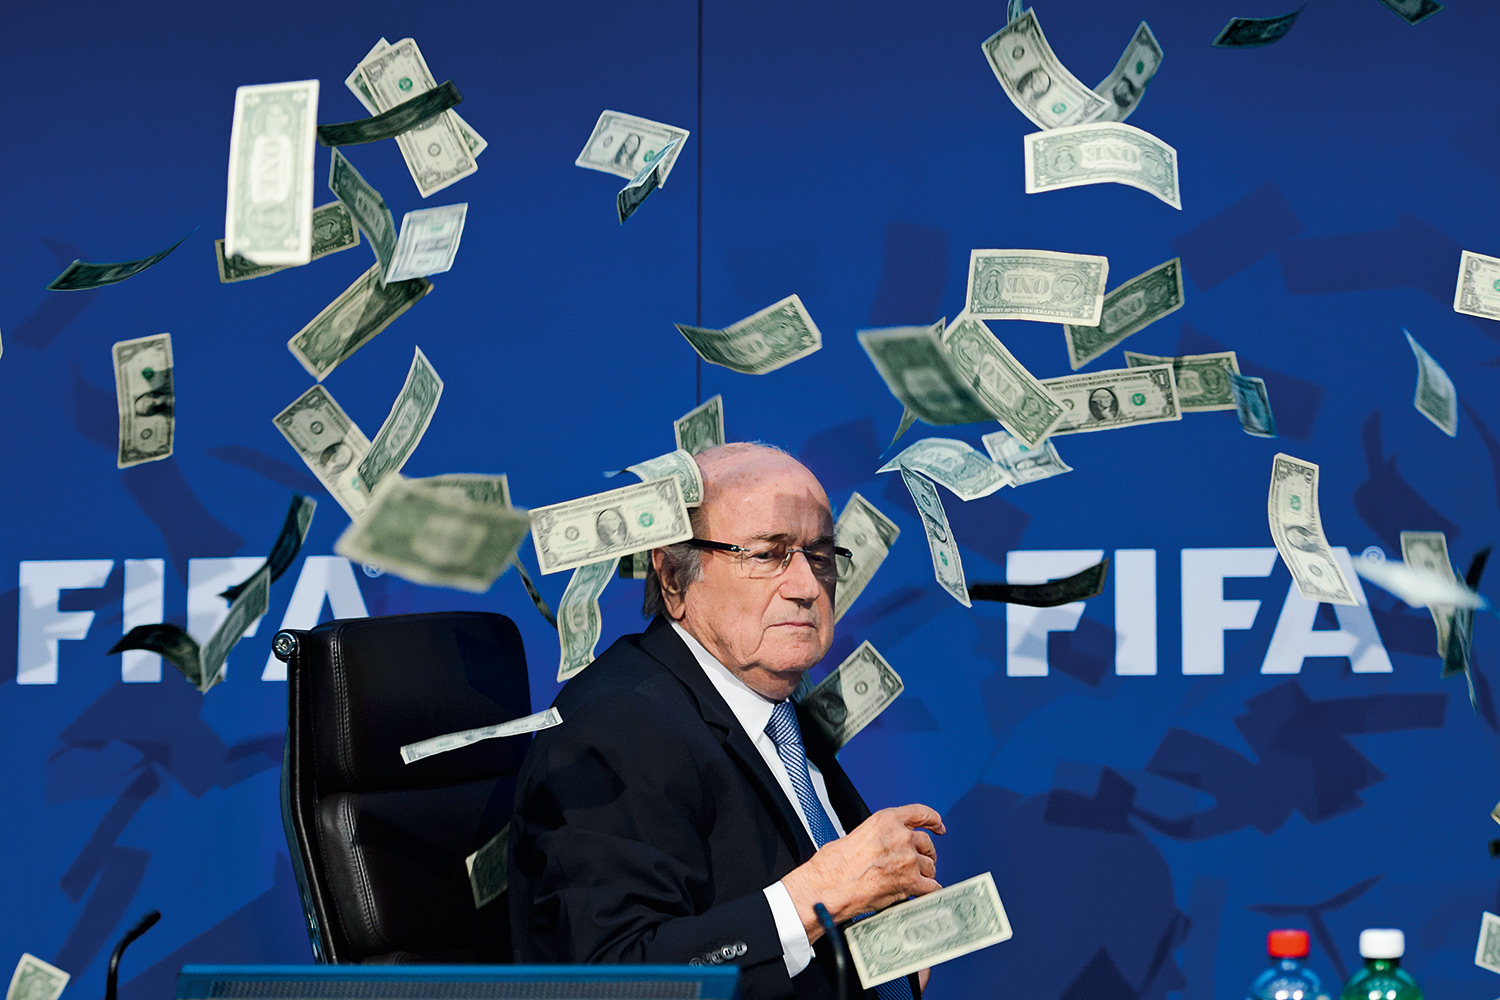 Copa do Mundo no Catar foi um erro, diz Blatter, ex-presidente da Fifa